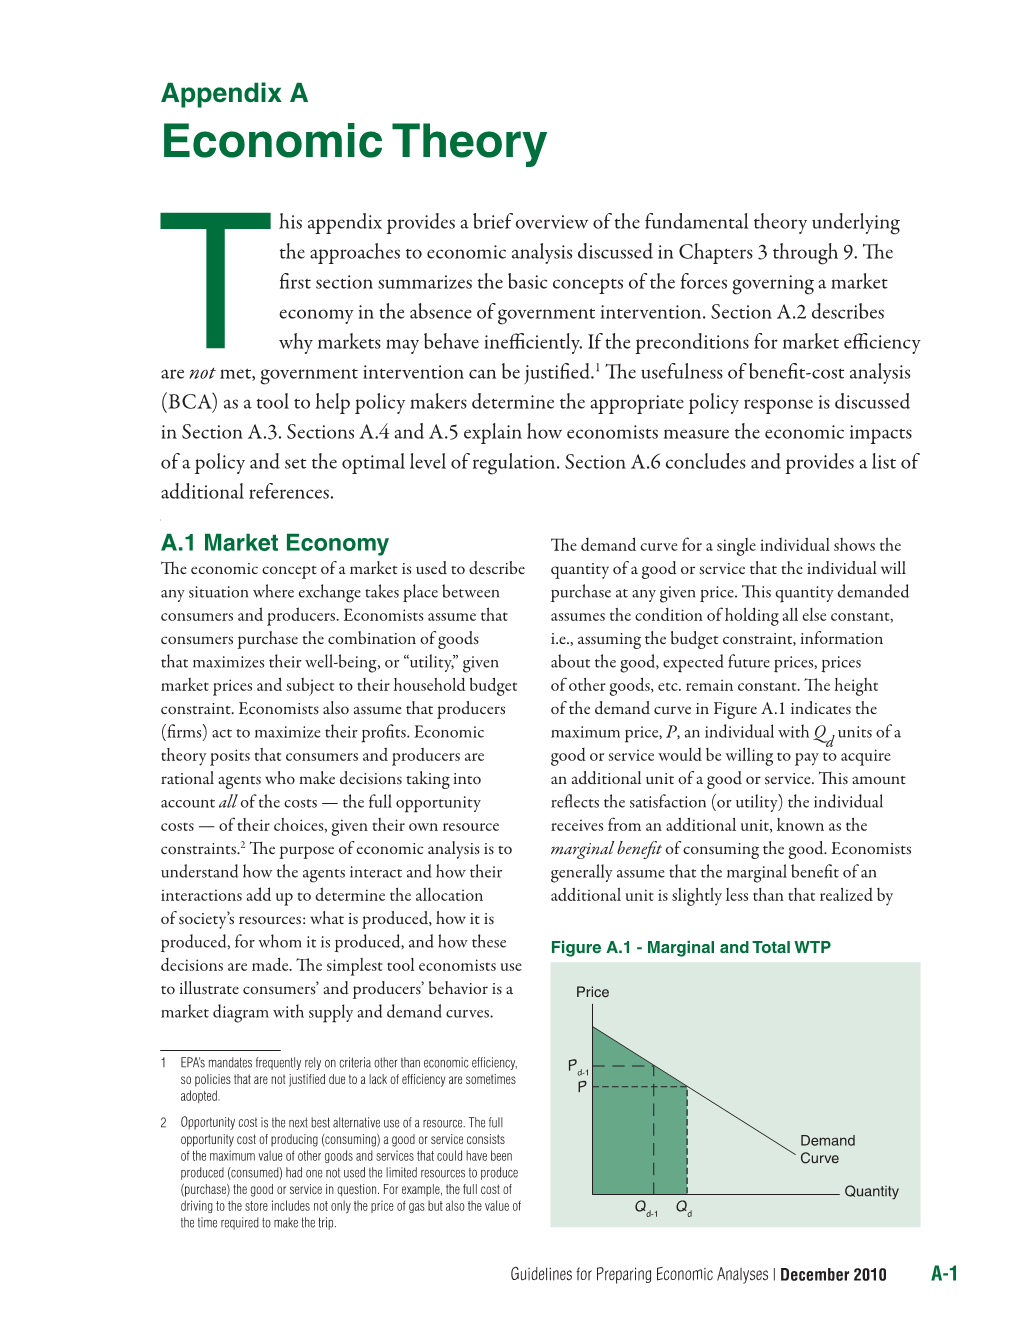 Appendix A: Economic Theory